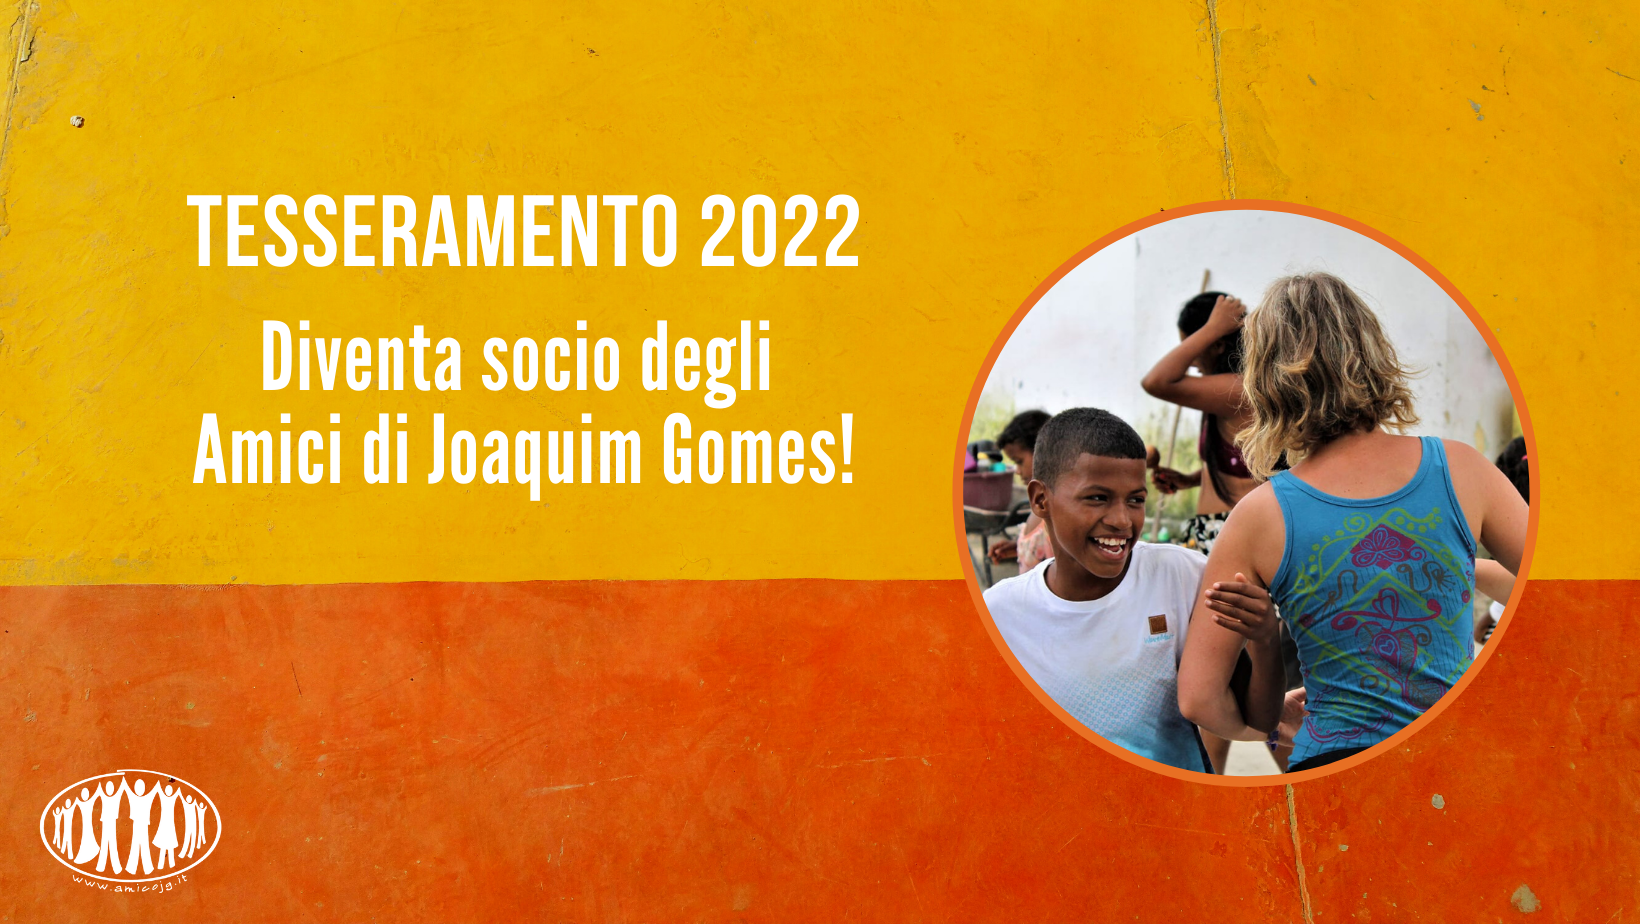 Tesseramento 2022: diventa socio degli Amici di Joaquim Gomes!